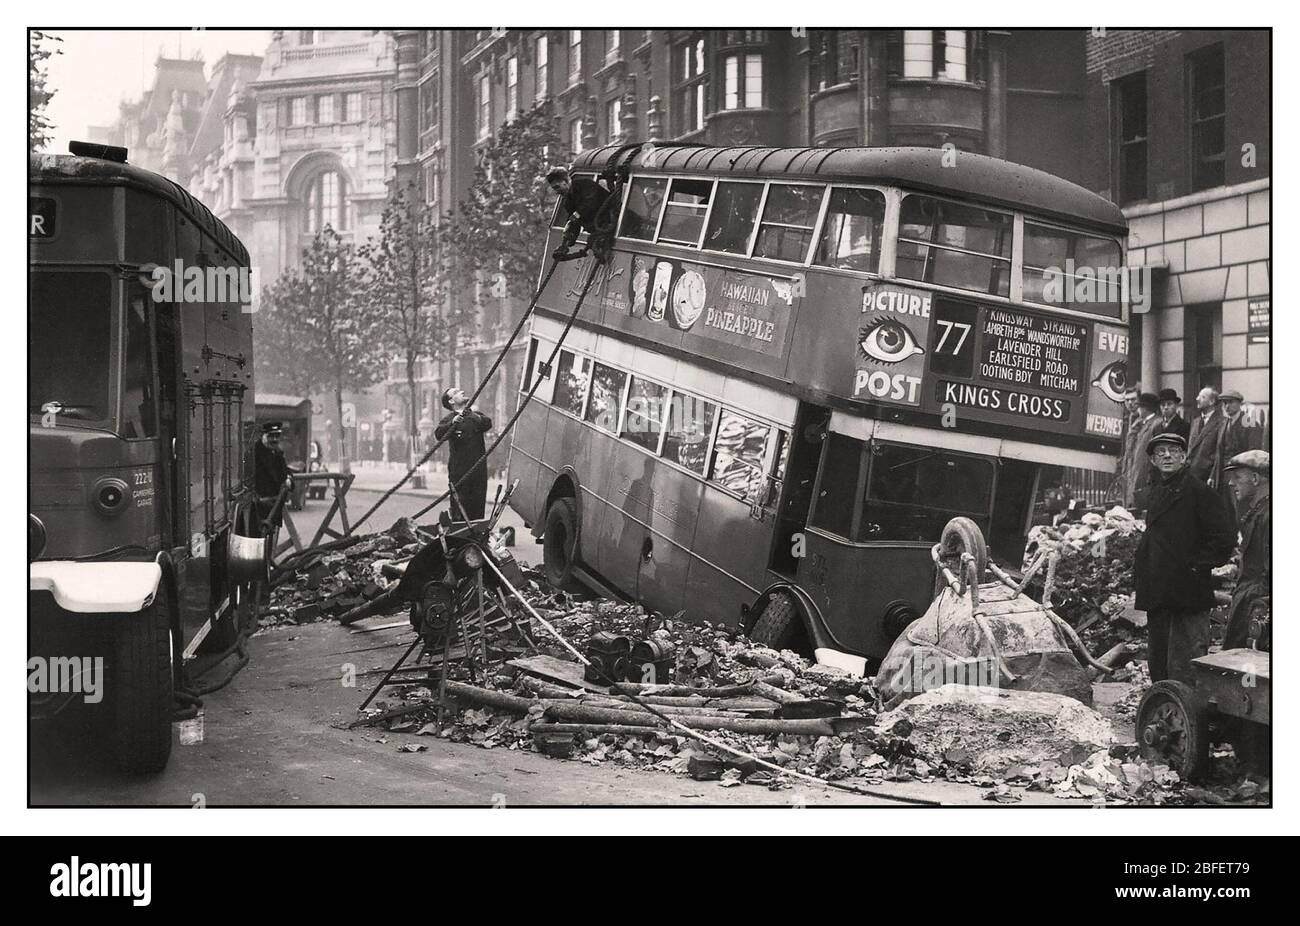 London Blitz 1940 WW2 Archivio immagine di London Bus in rotta verso Kings Cross in un cratere bomba causato da bombardamenti terroristici da parte della Germania nazista Luftwaffe Foto Stock